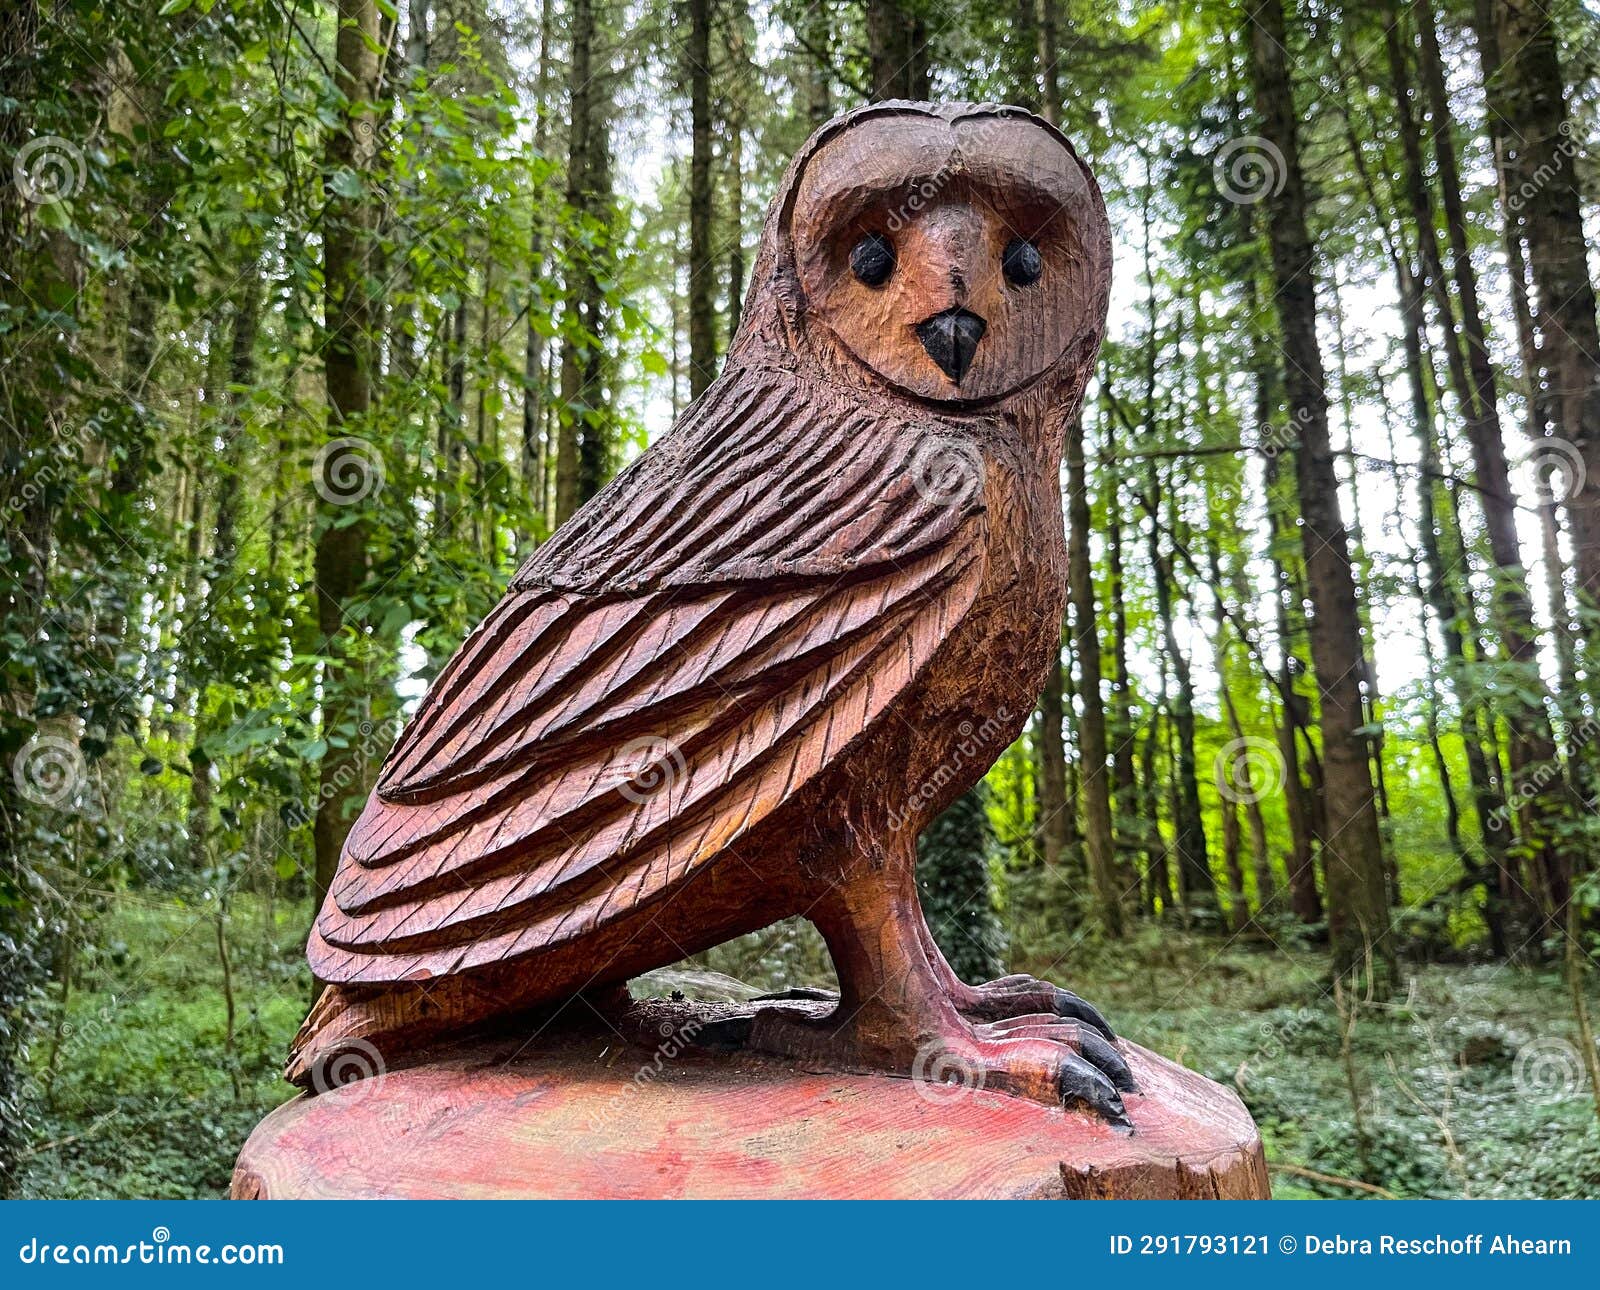 Wood carving owl stock photos